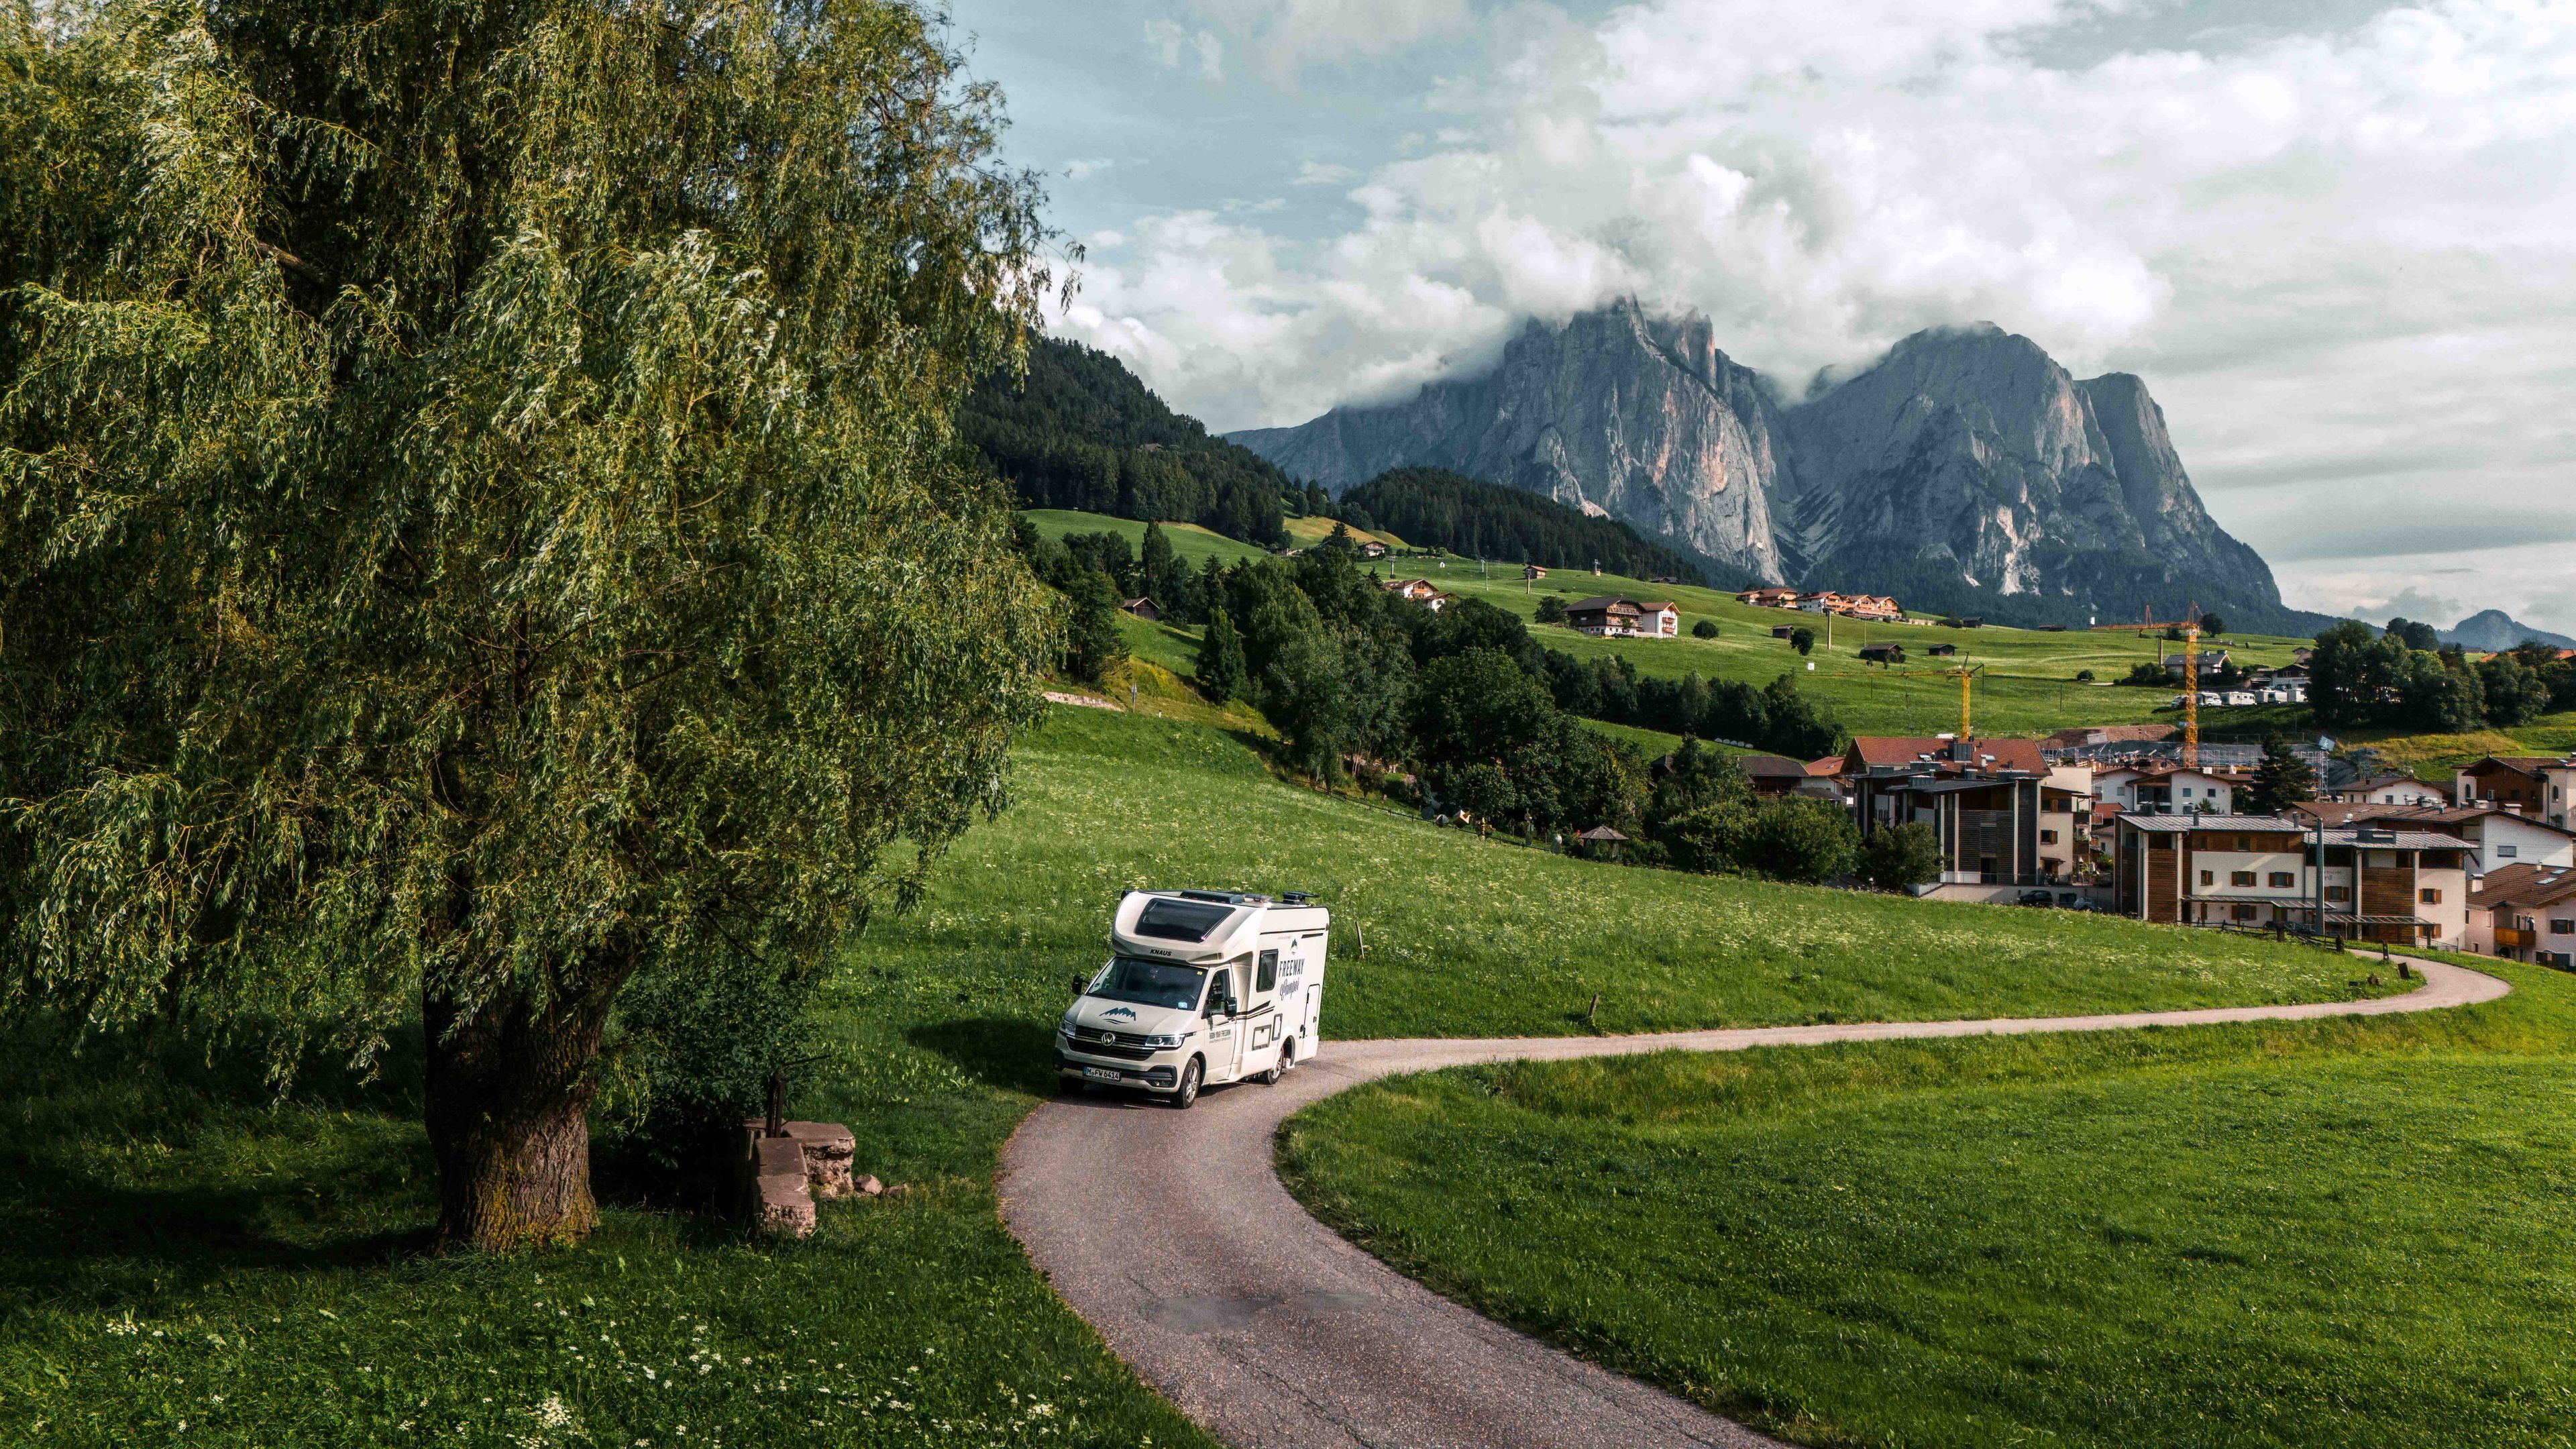 Viaggi in camper economici: VW Bulli RV Camper (Knaus) in viaggio per raggiungere i campeggi nelle Dolomiti, Italia